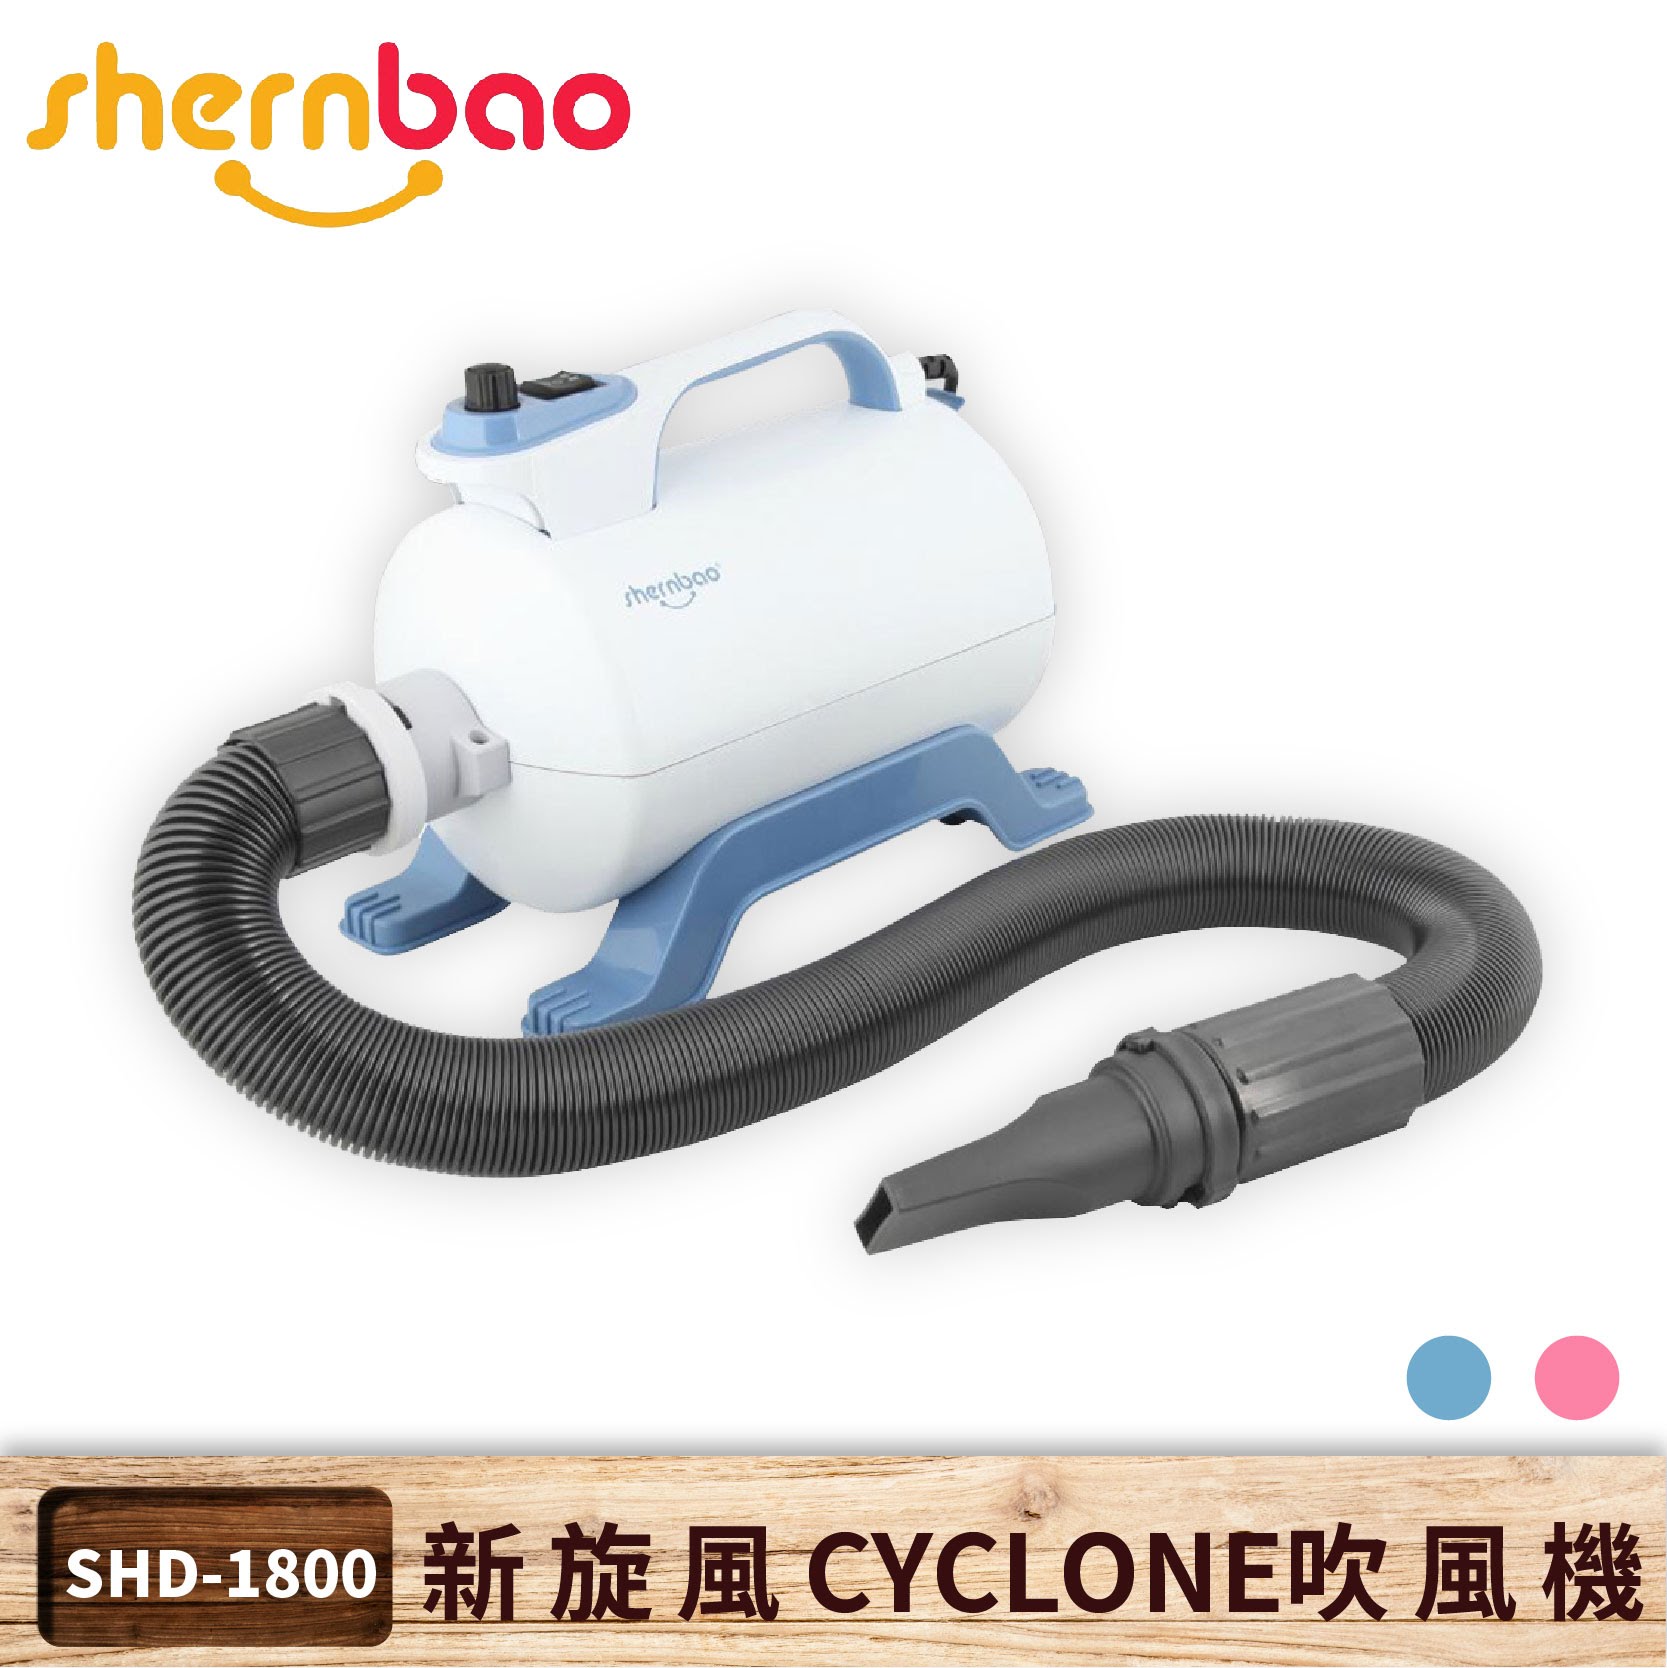 【神寶】新旋風 CYCLONE 寵物吹風機 SHD-1800 藍色 一般用單馬達 吹水機 清潔美容 寵物店 貓狗